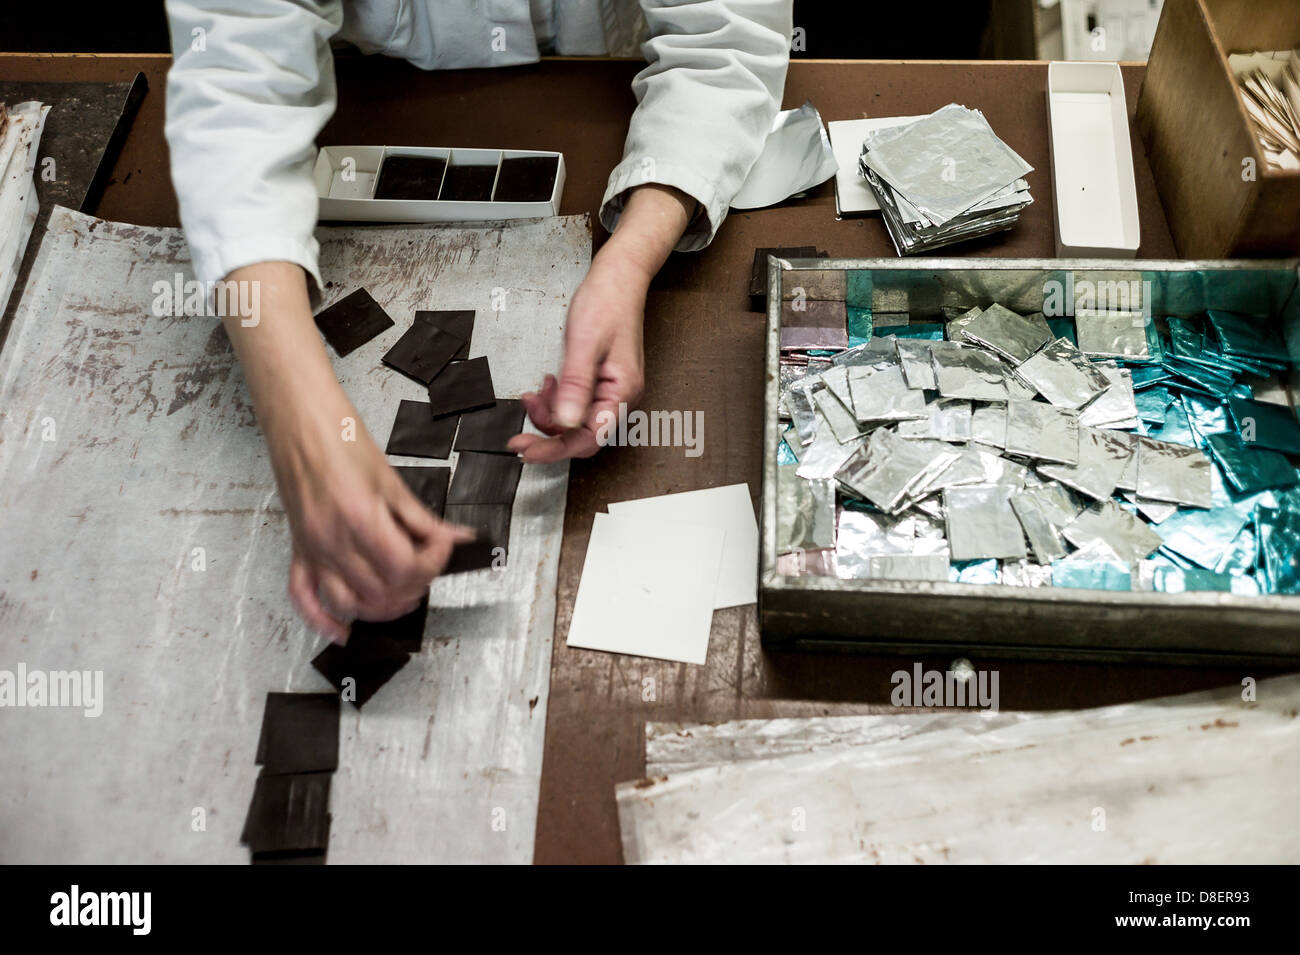 Berlin, Allemagne, les employés d'Erich Hamann fabrique de chocolat dans la production Banque D'Images